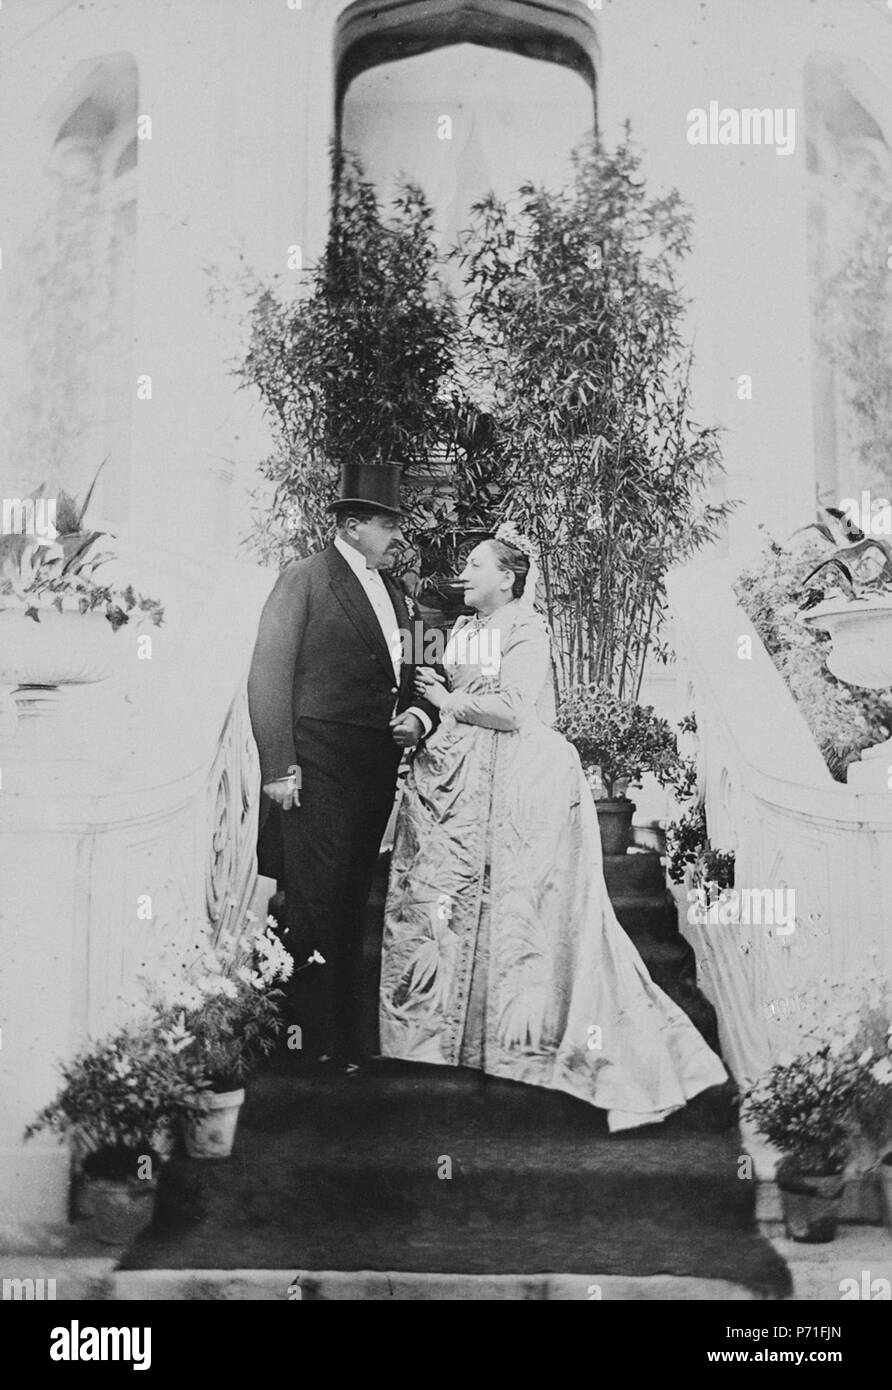 English: Photograph of Ernest II, Duke of Saxe-Coburg-Gotha (1818-93) and his wife Alexandrine, Duchess of Saxe-Coburg-Gotha (1820-1904), taken at the time of their Jubilee, Coburg. Português: Foto de Ernesto II, Duque de Saxe-Coburgo-Gota (1818-1893), e sua esposa Alexandrina (1820-1904), tirada por ocasião de suas bodas de ouro, em Coburgo. circa 1893 78 The Duke and Duchess of Saxe-Coburg-Gotha Stock Photo